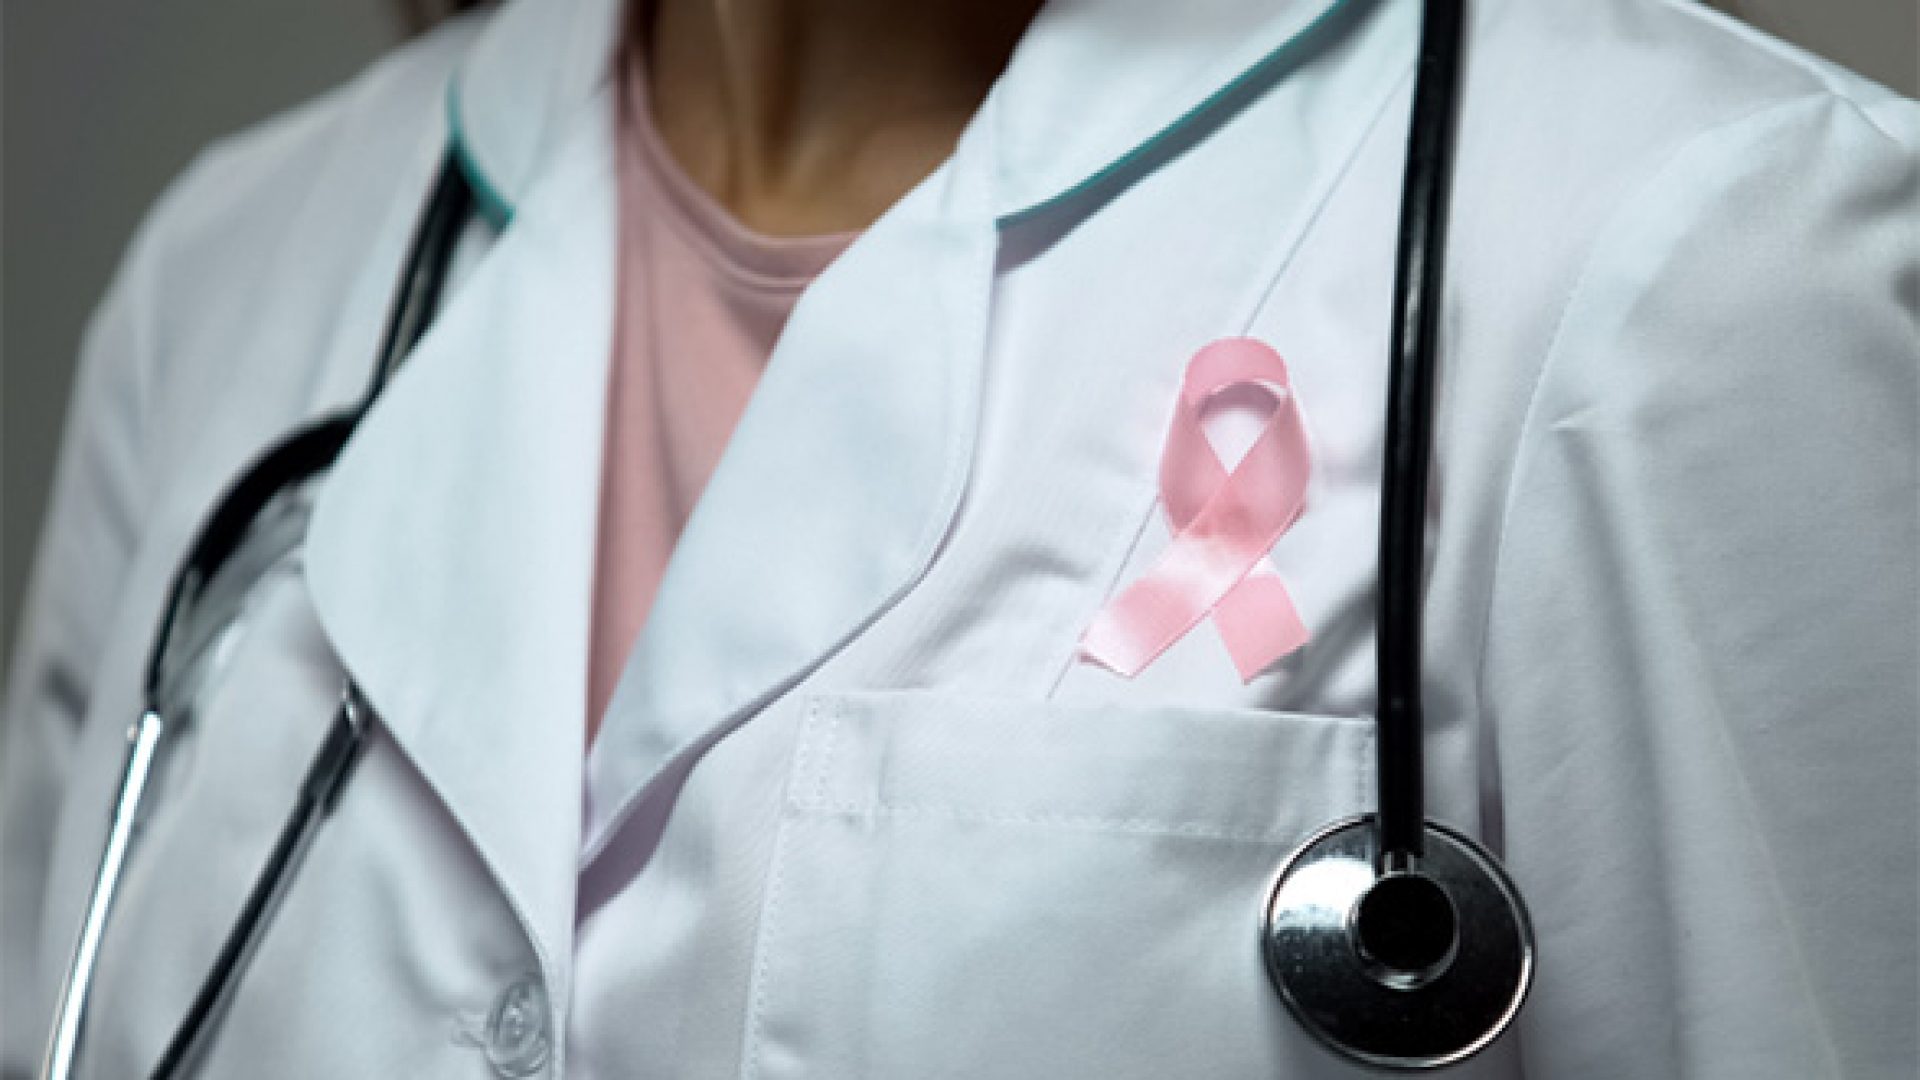 Conheça os resultados do estudo “Impacto económico e psicossocial do cancro da mama”